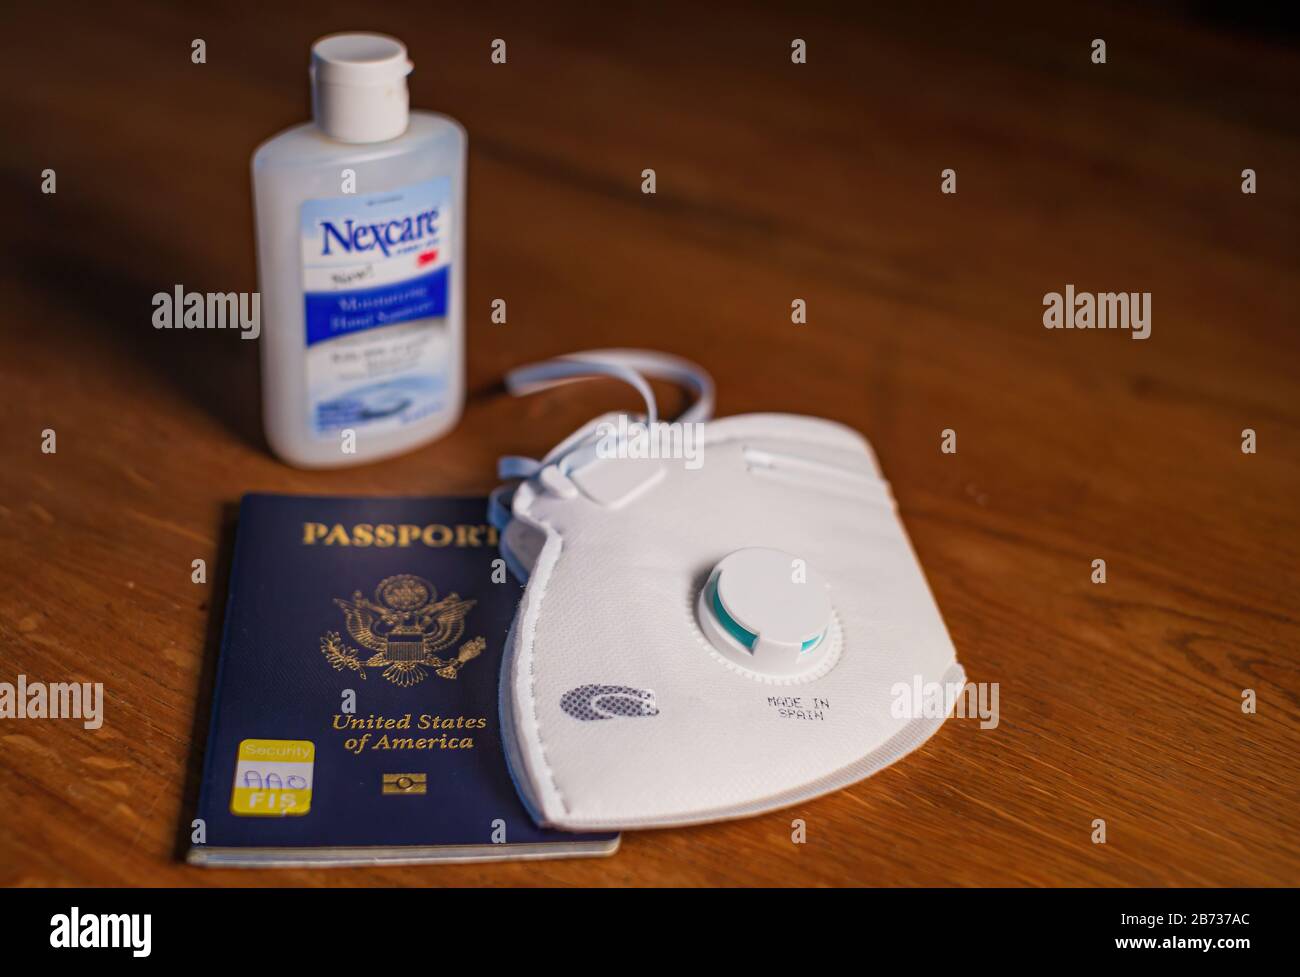 Boston, États-Unis - 13 mars 2020: Gros plan du masque, passeport américain et agent de surface sur la table prêt pour le voyage en temps de Coronavirus pandamic. Banque D'Images